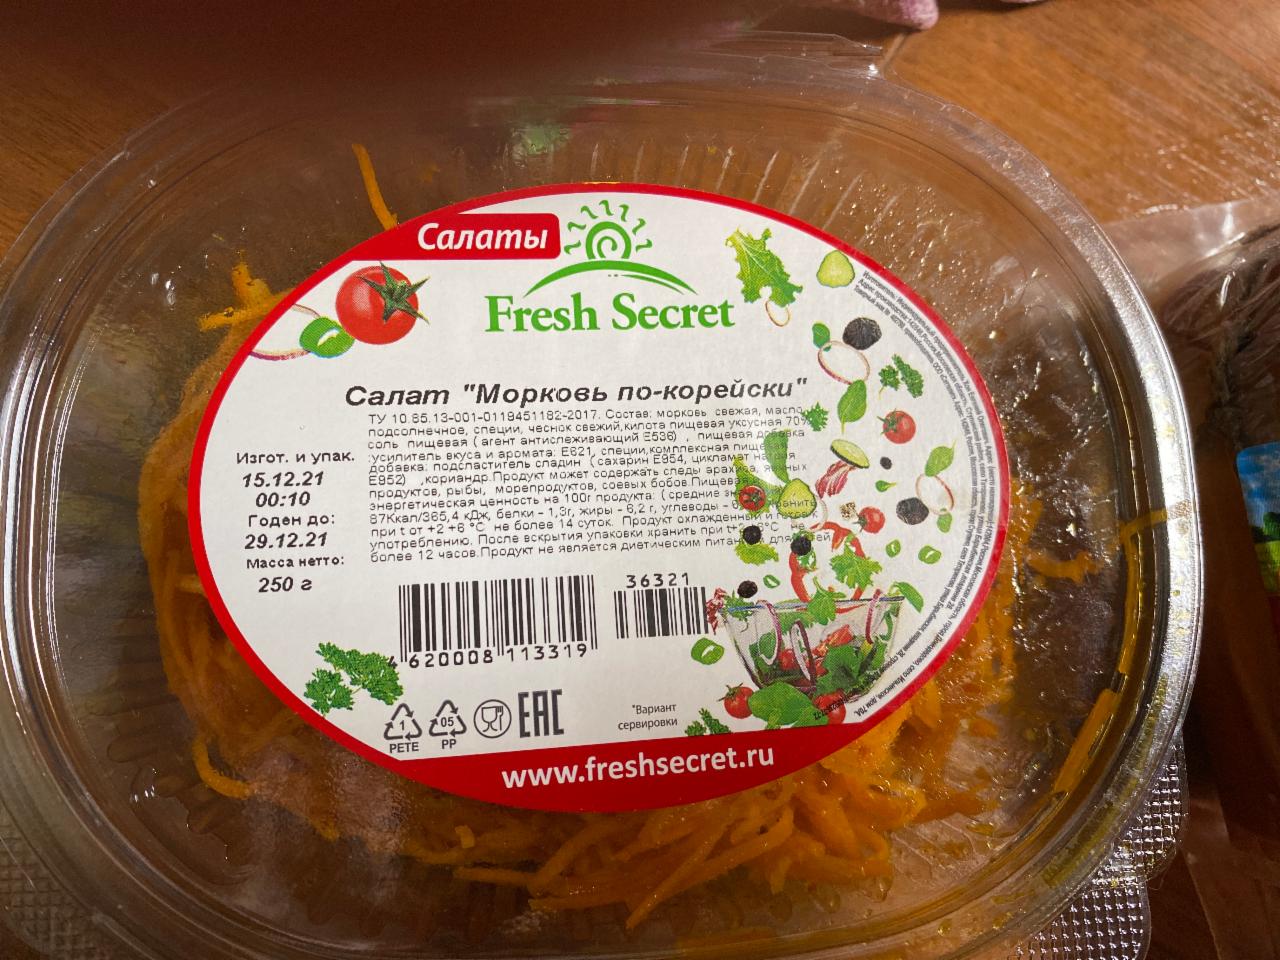 Фото - салат морковь по-корейски Fresh secret